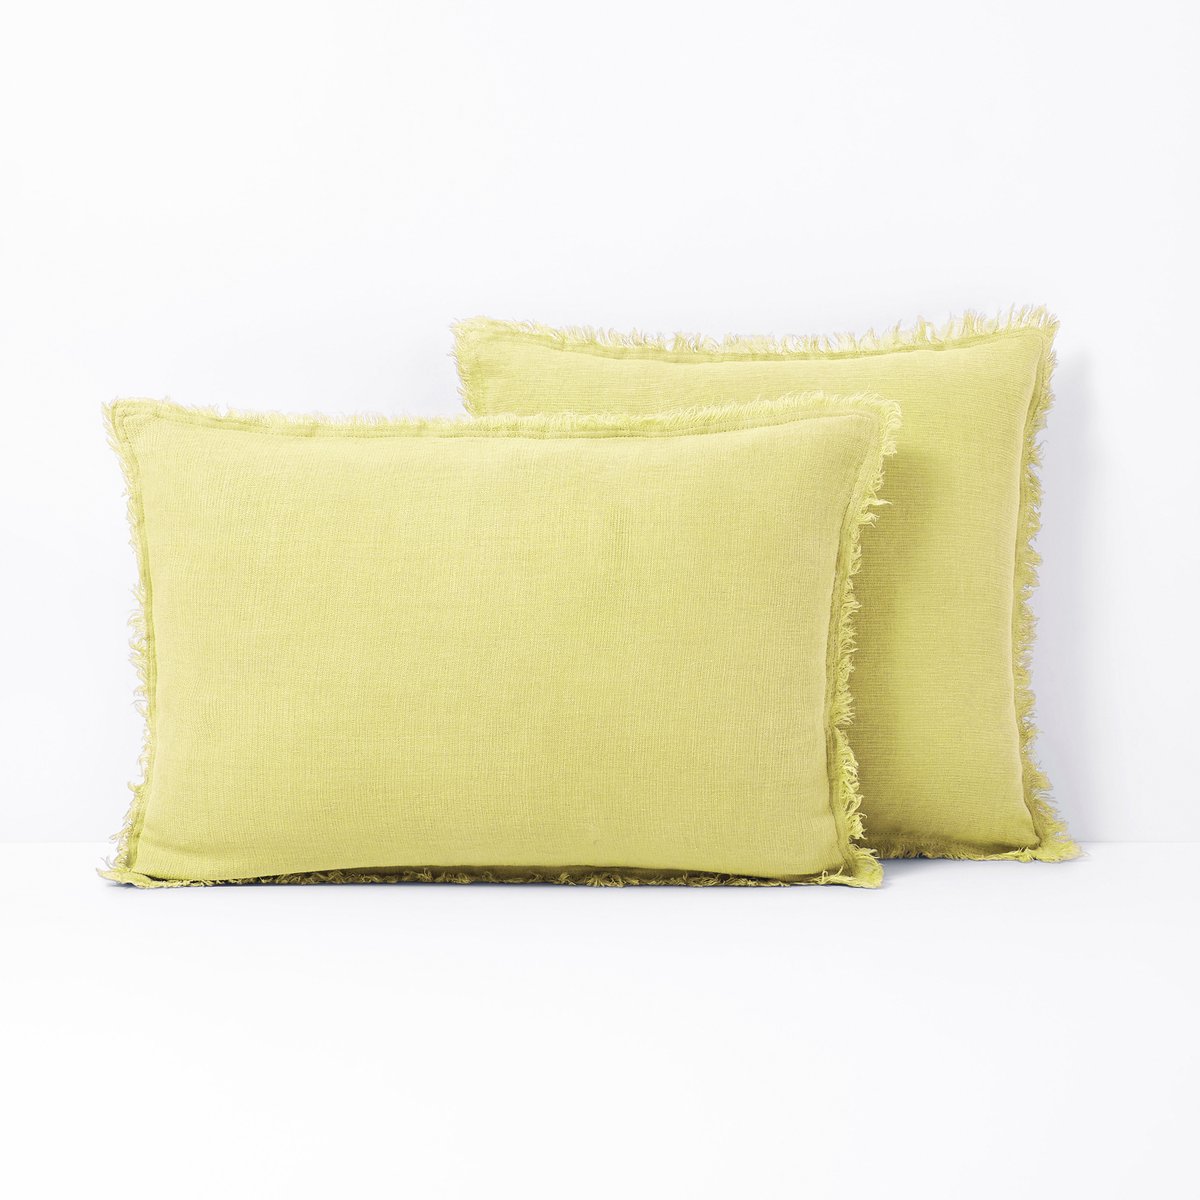 Чехол LaRedoute На подушку-валик из 100 льна Linange 50 x 50 см желтый, размер 50 x 50 см - фото 1